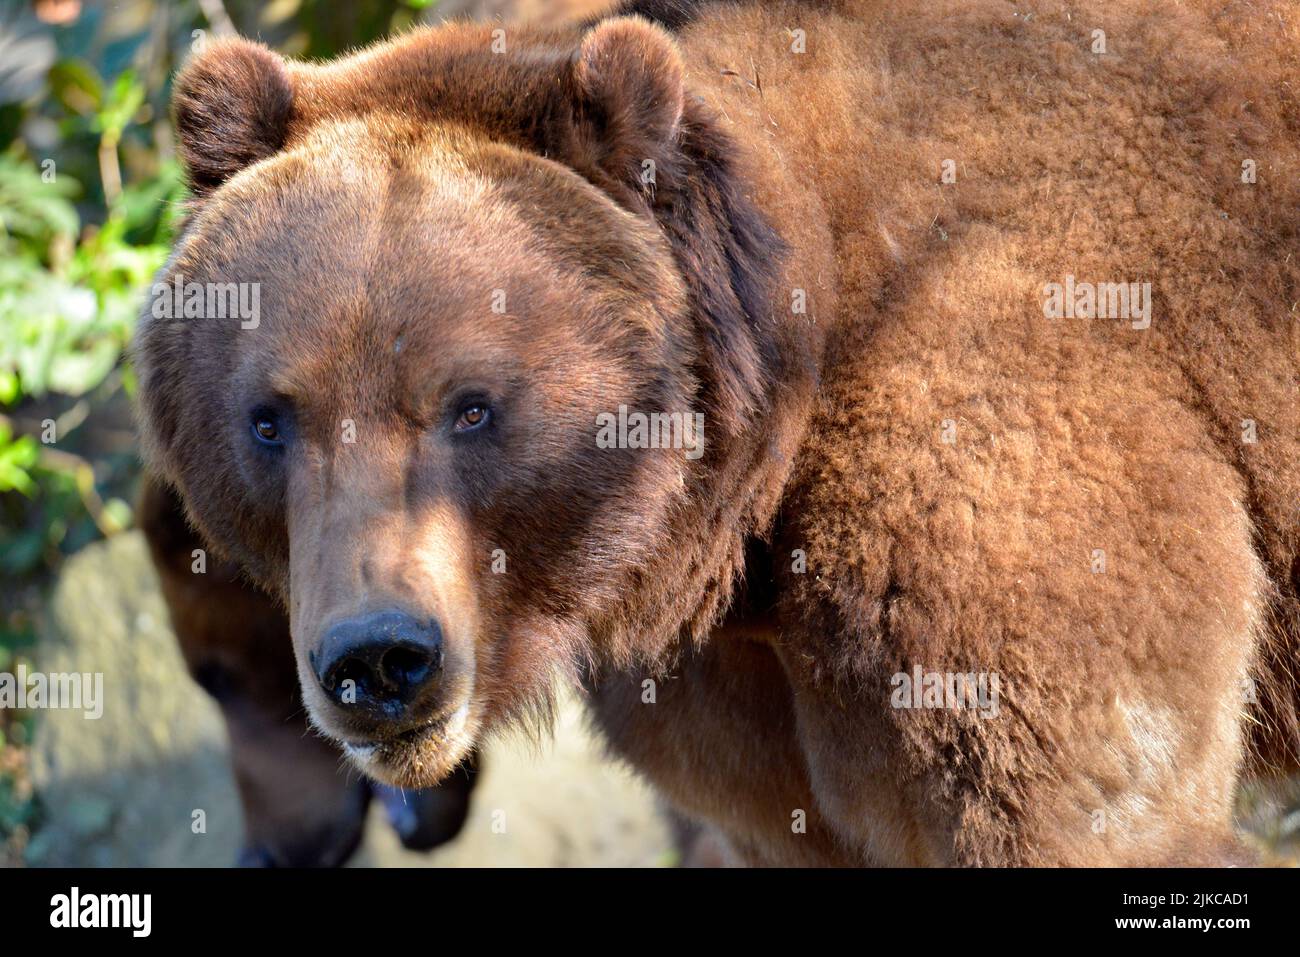 Porträt der Vorderseite eines Grizzly-Bären (Ursus arctos horribilis) mit einem sehr ausdrucksstarken Blick Stockfoto